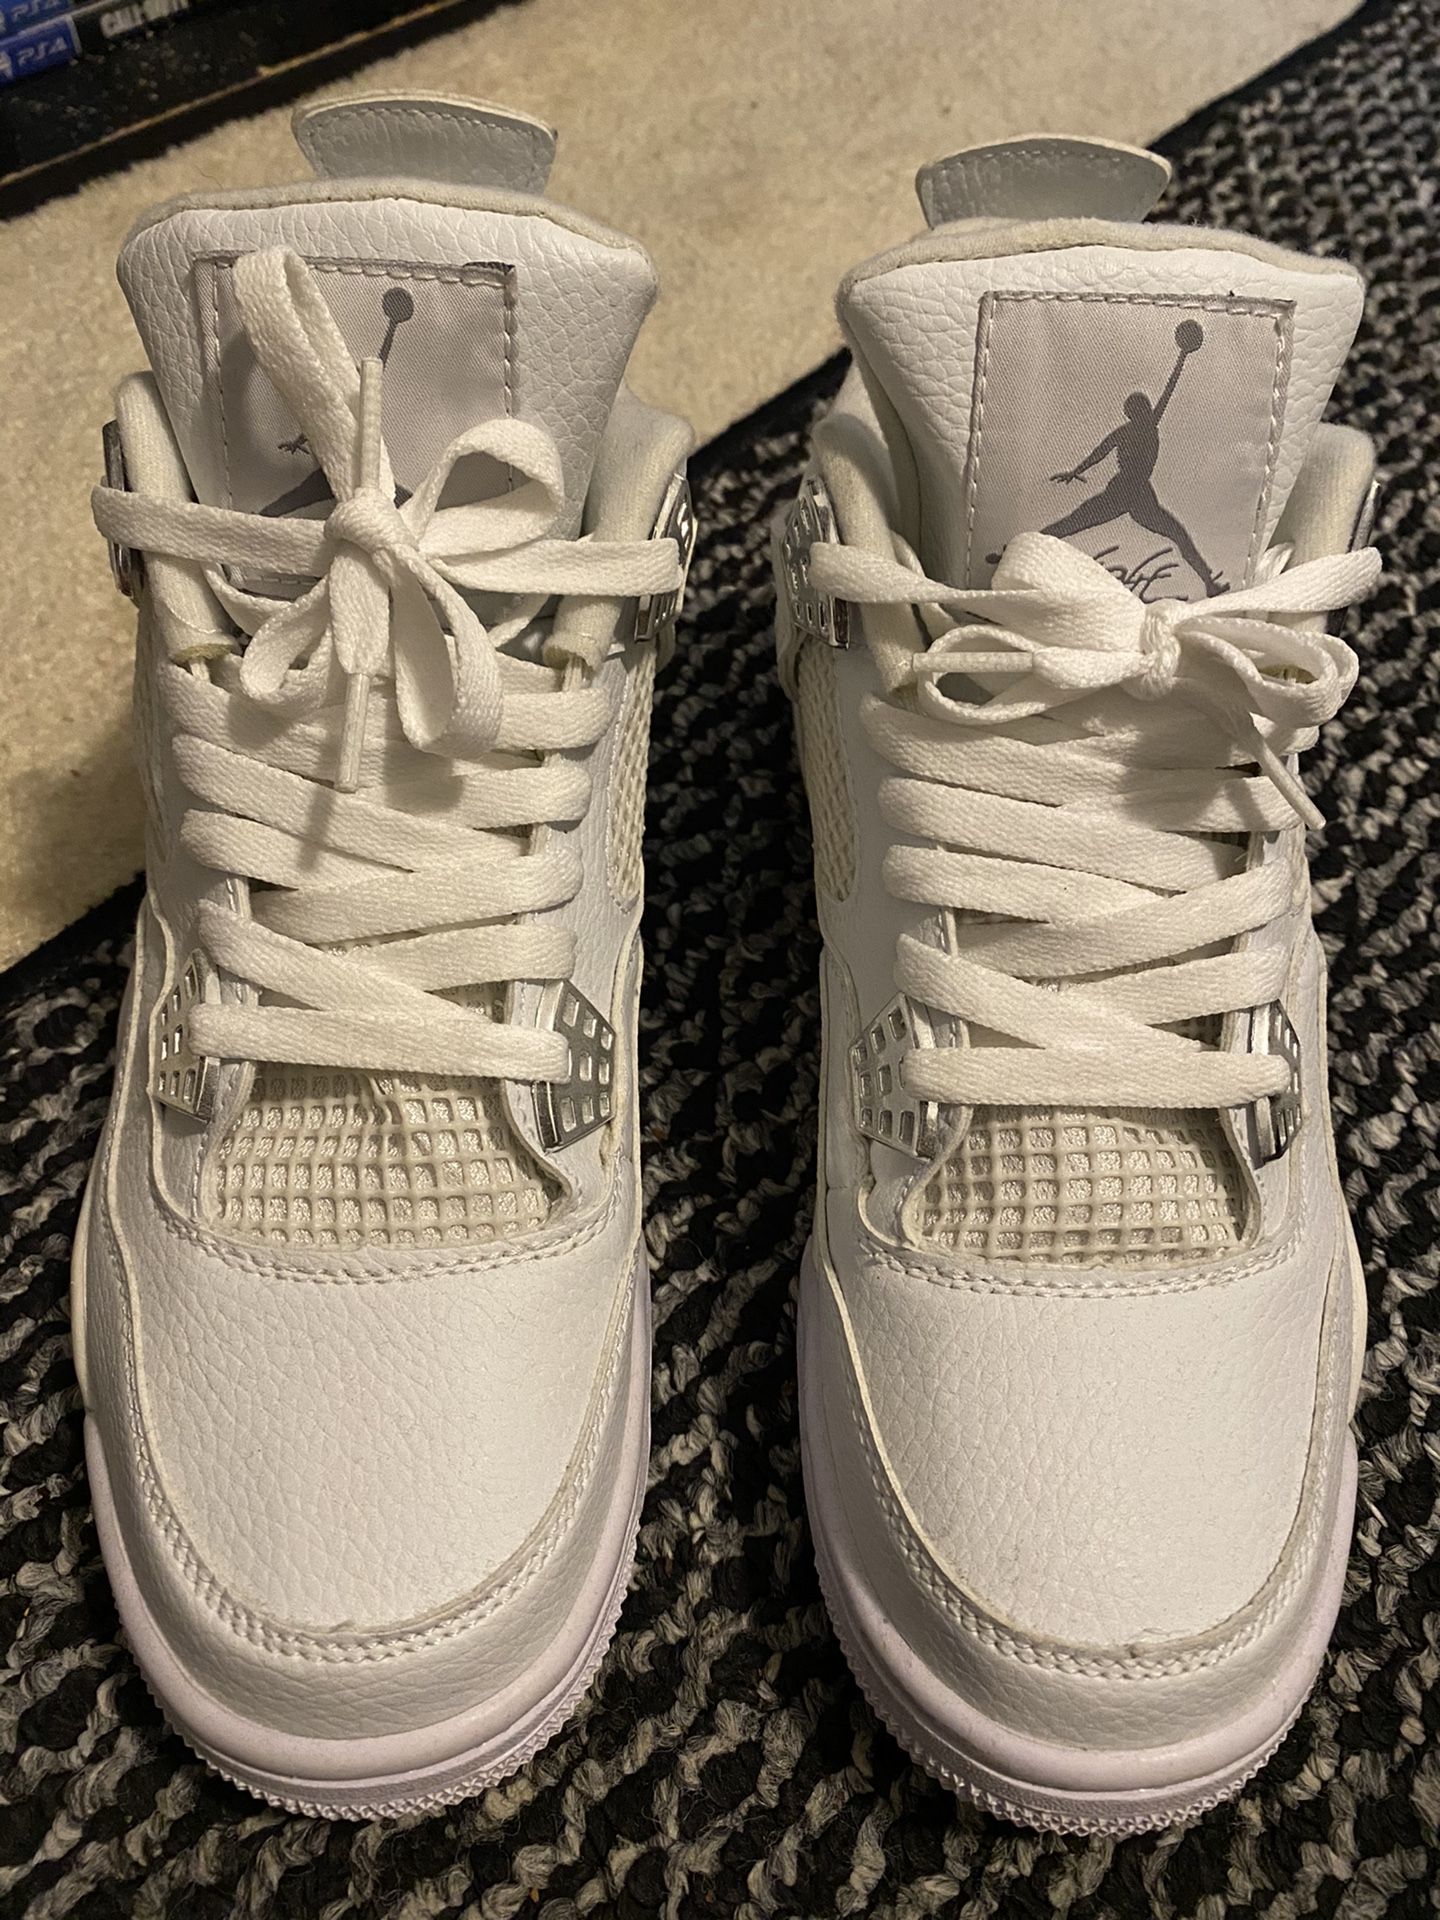 Jordan retro 4 (white) Size9-1/2 ( NO BOX! Pick up only!